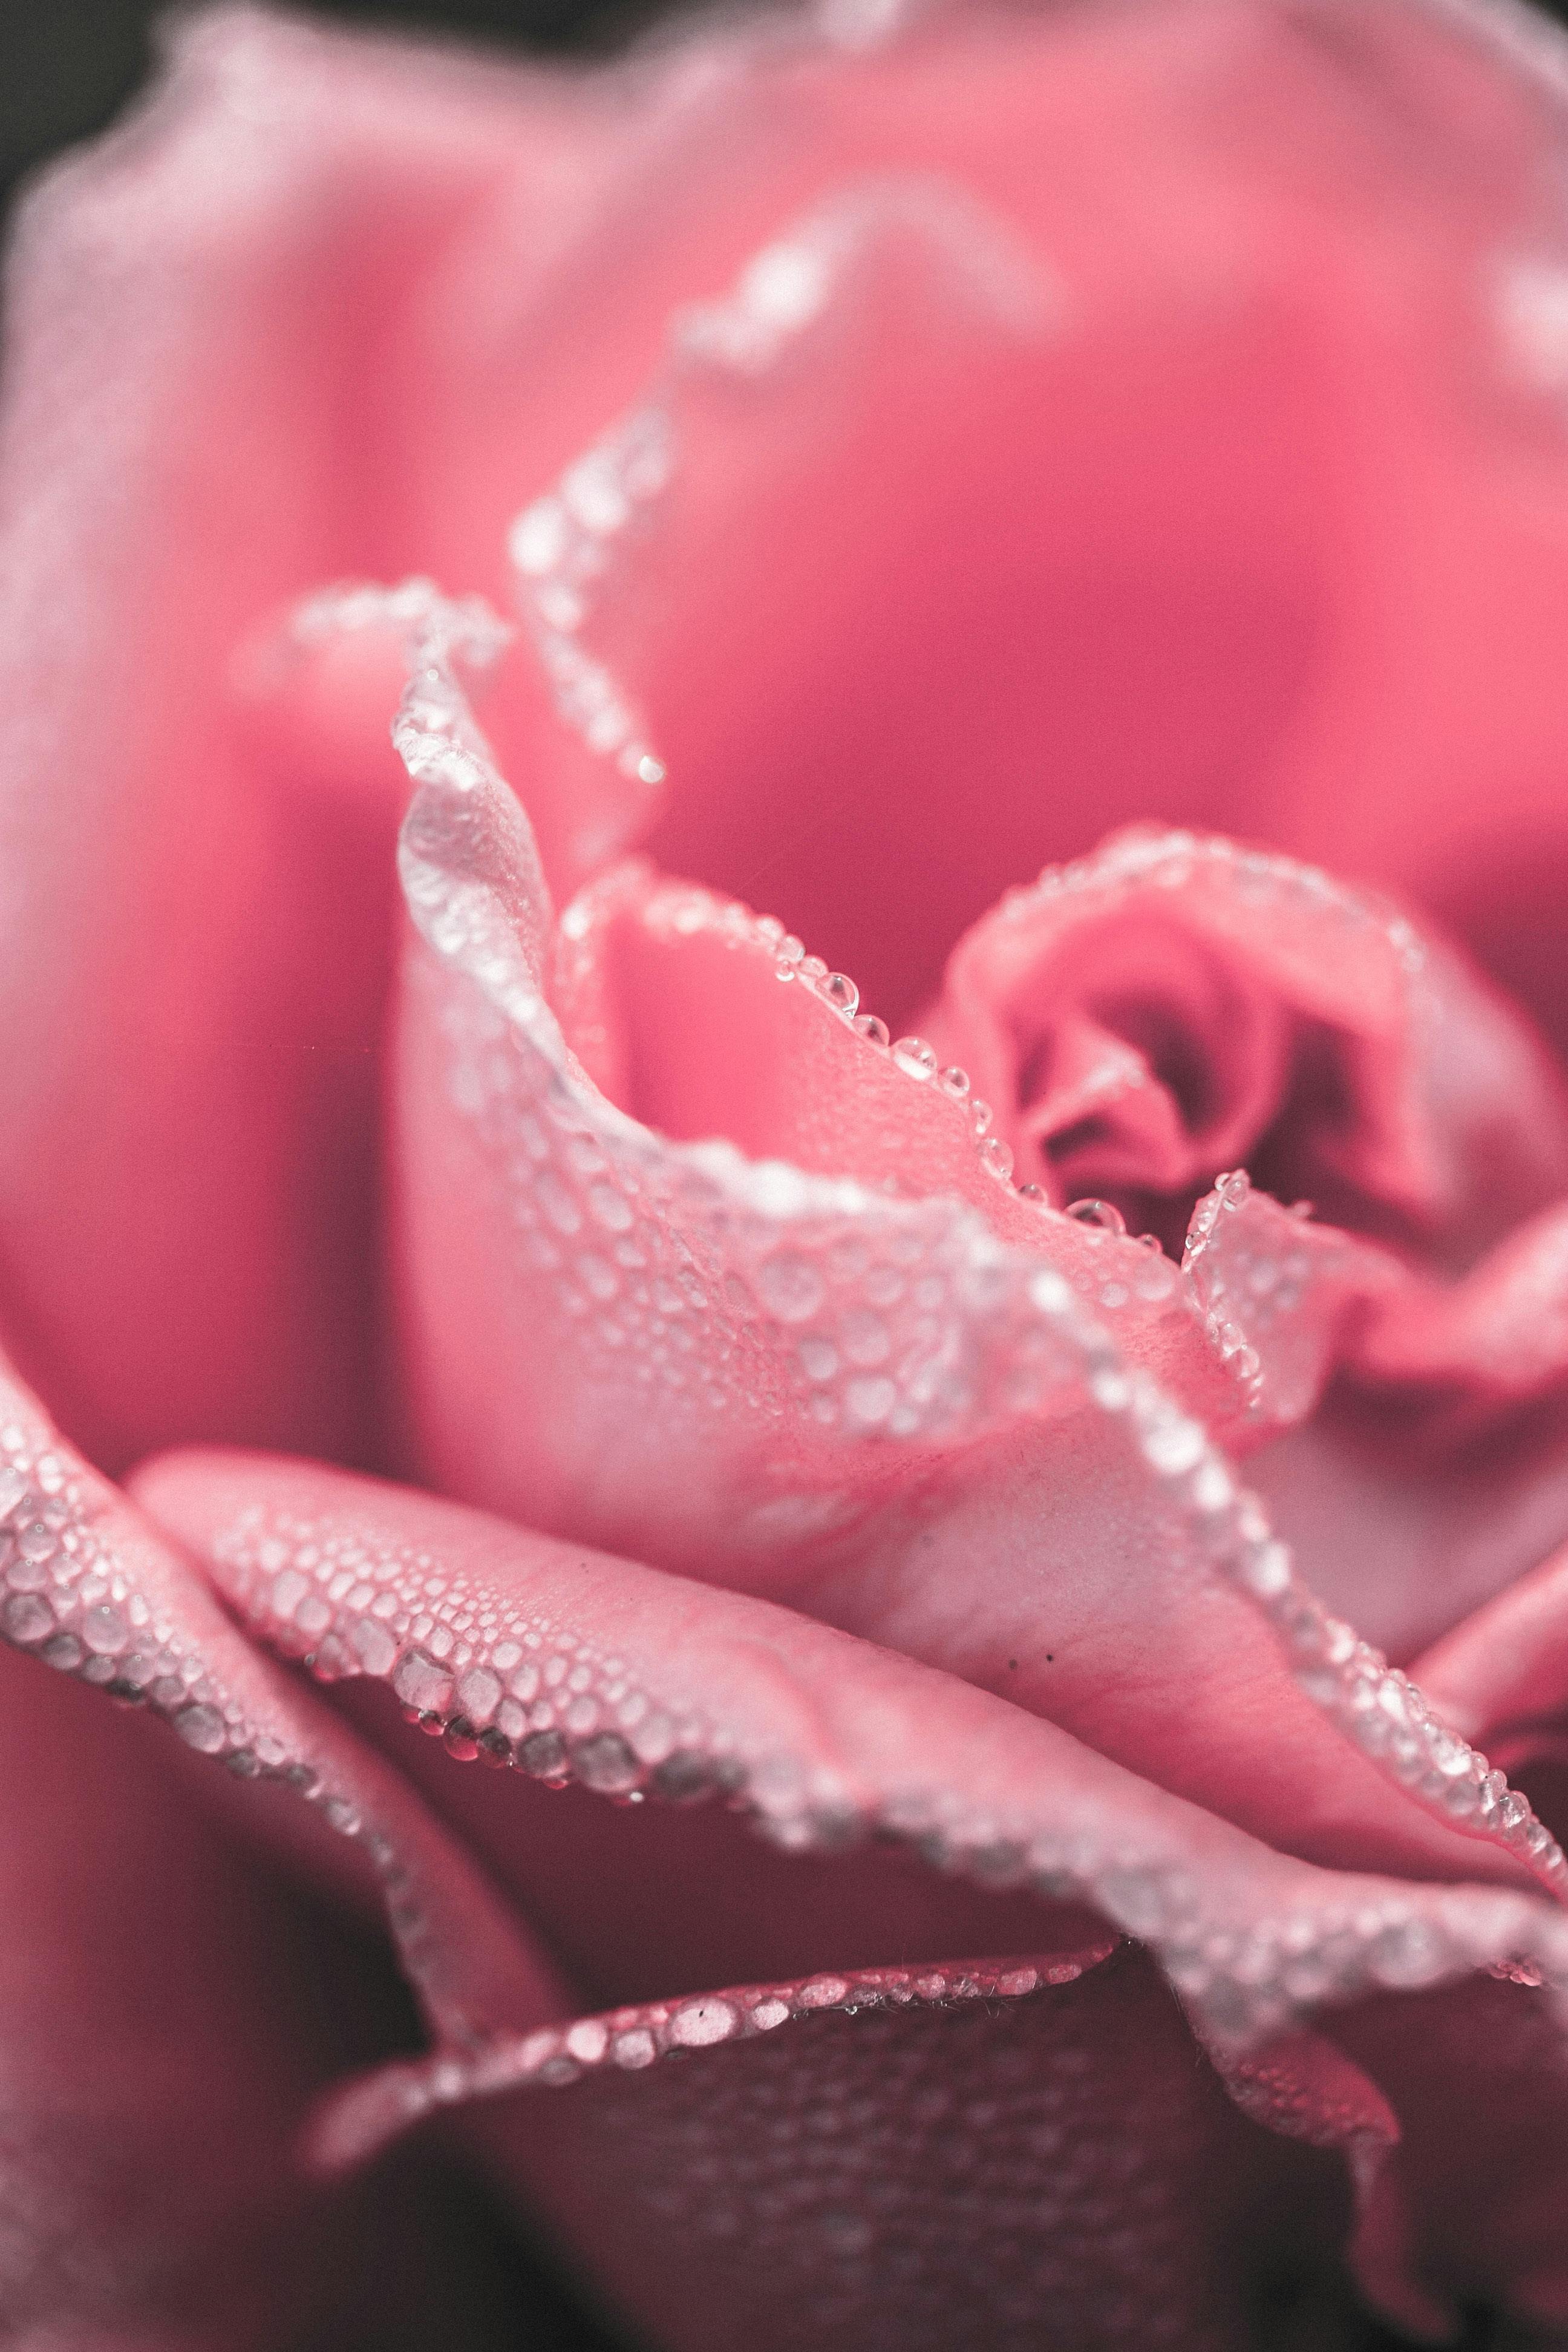 Hình ảnh hoa hồng là một tác phẩm của nghệ thuật, nó thanh lịch trang trọng và vô cùng quý phái. Với hình ảnh này, bạn không chỉ được chiêm ngưỡng đẹp của hoa hồng mà còn được trải nghiệm cảm giác hòa mình vào một thế giới thực sự đẹp đẽ.